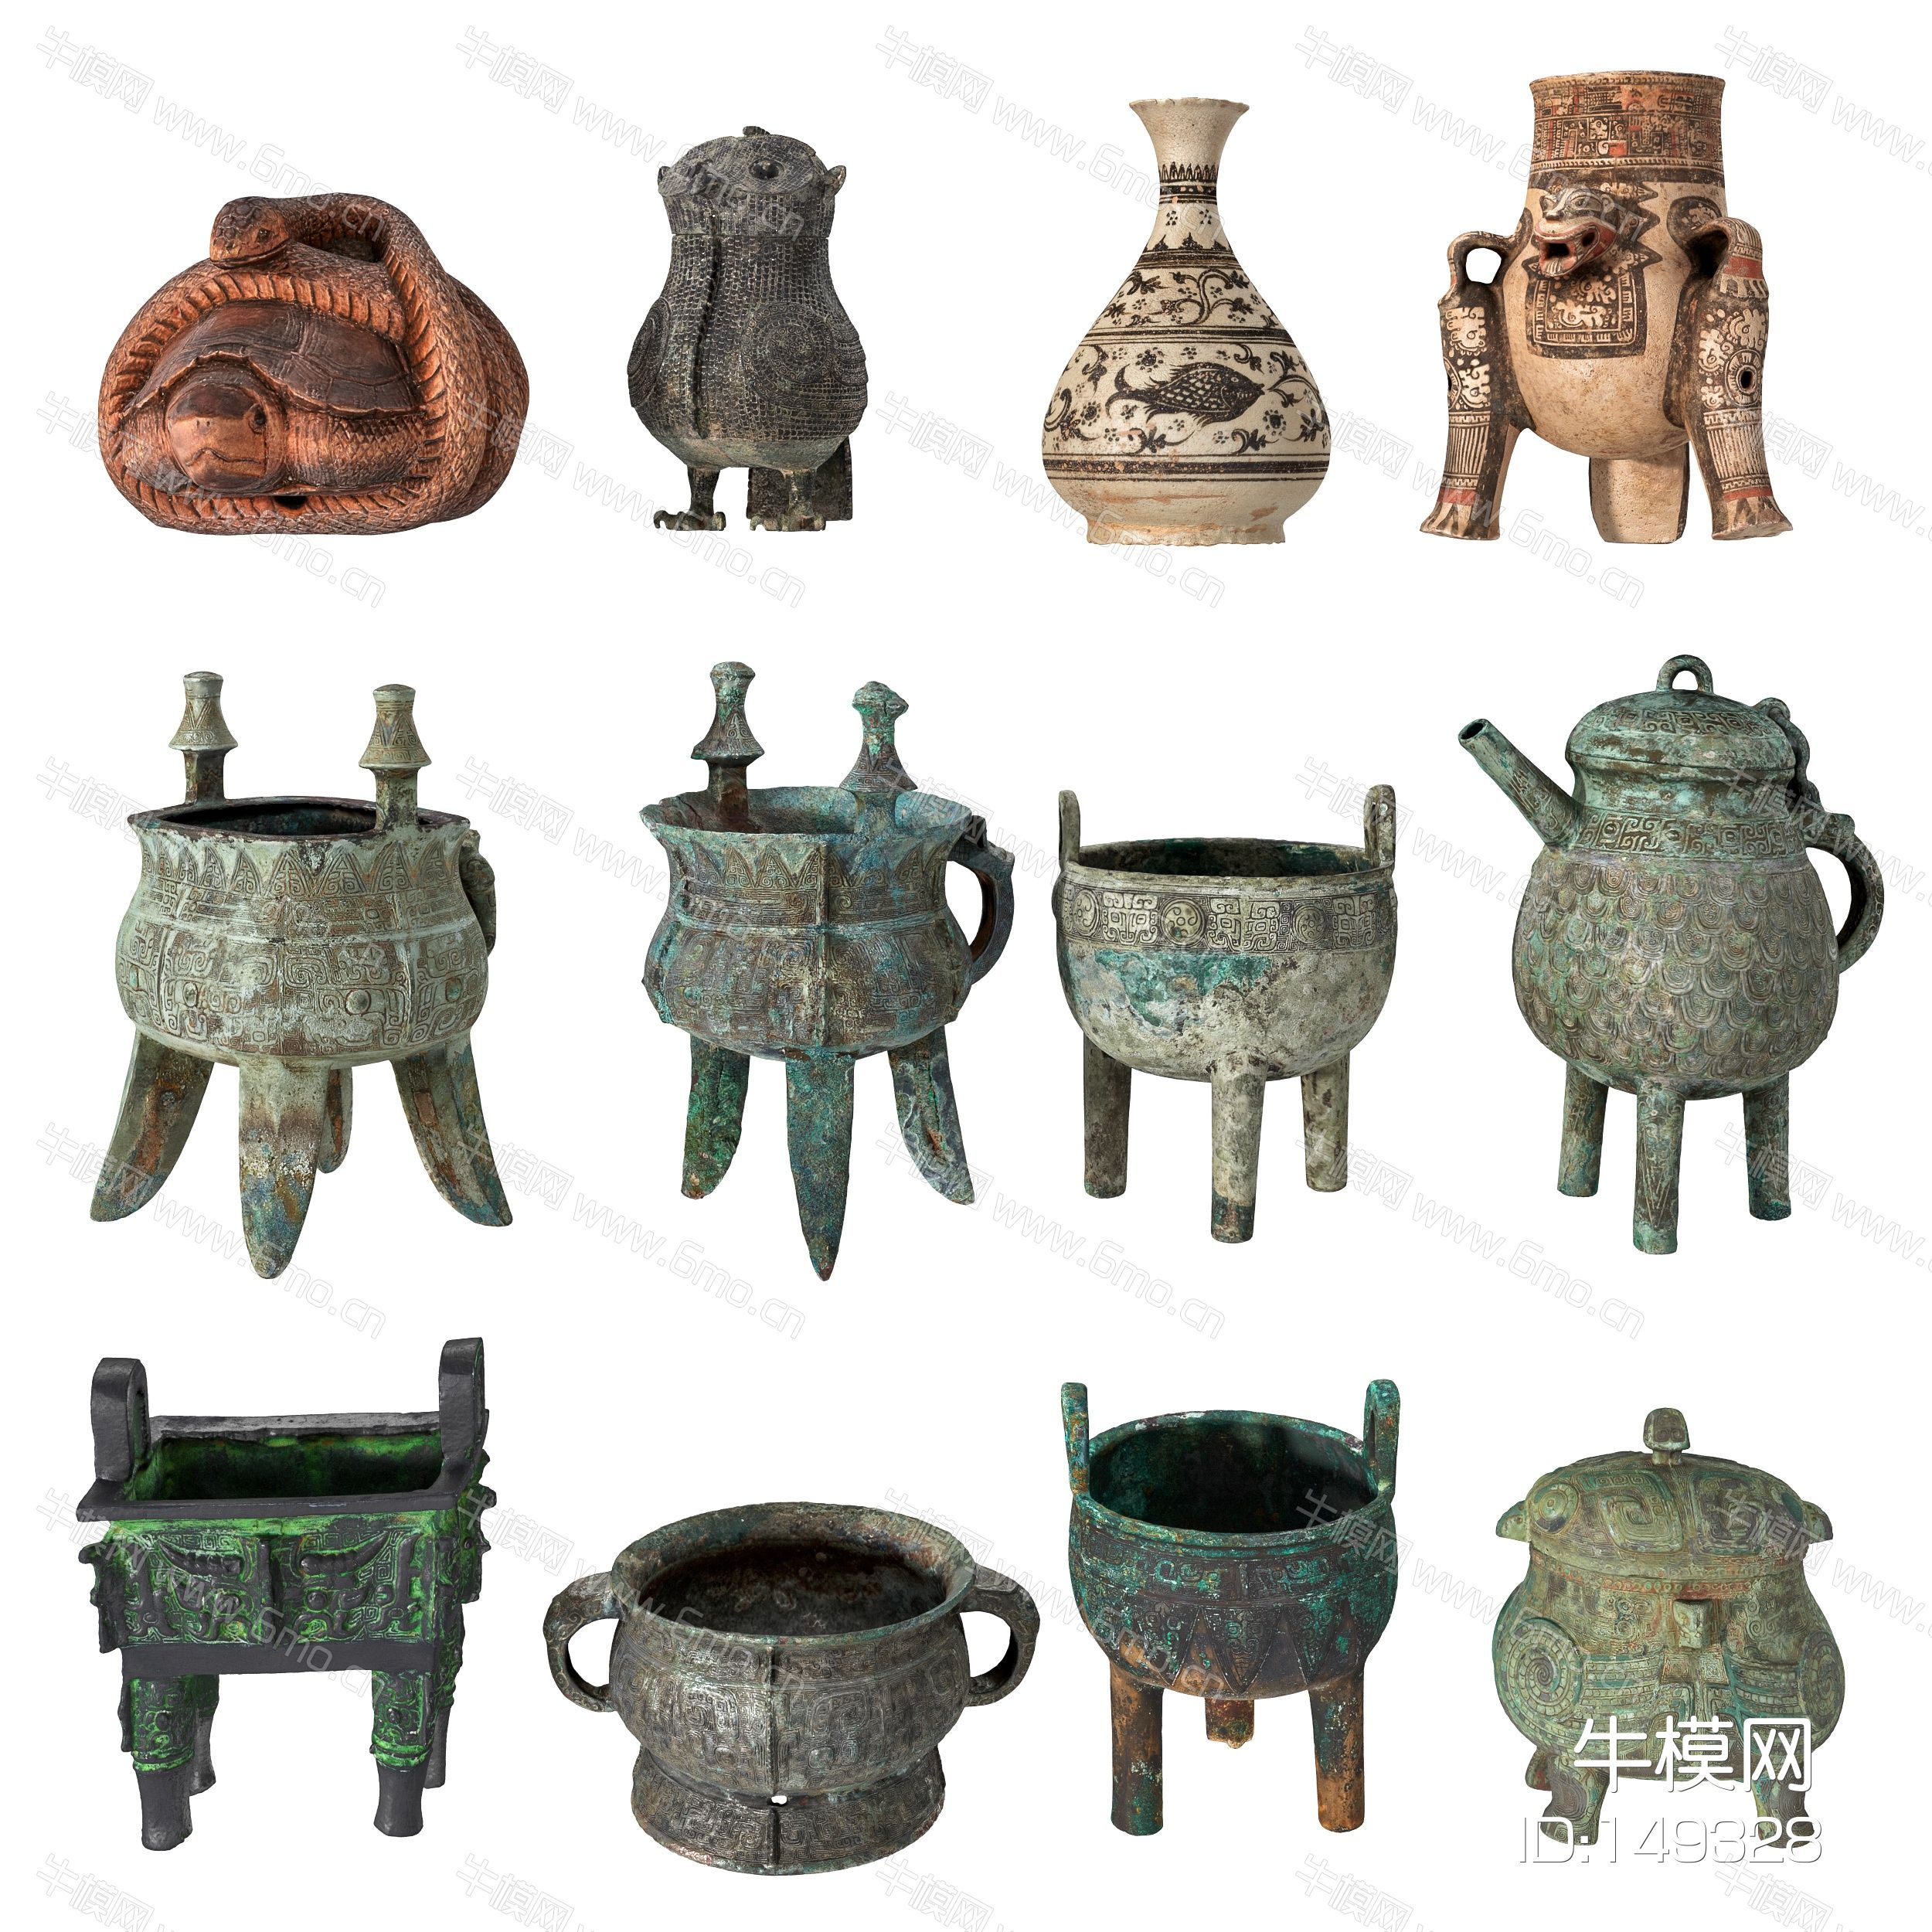  古董文物青铜器皿